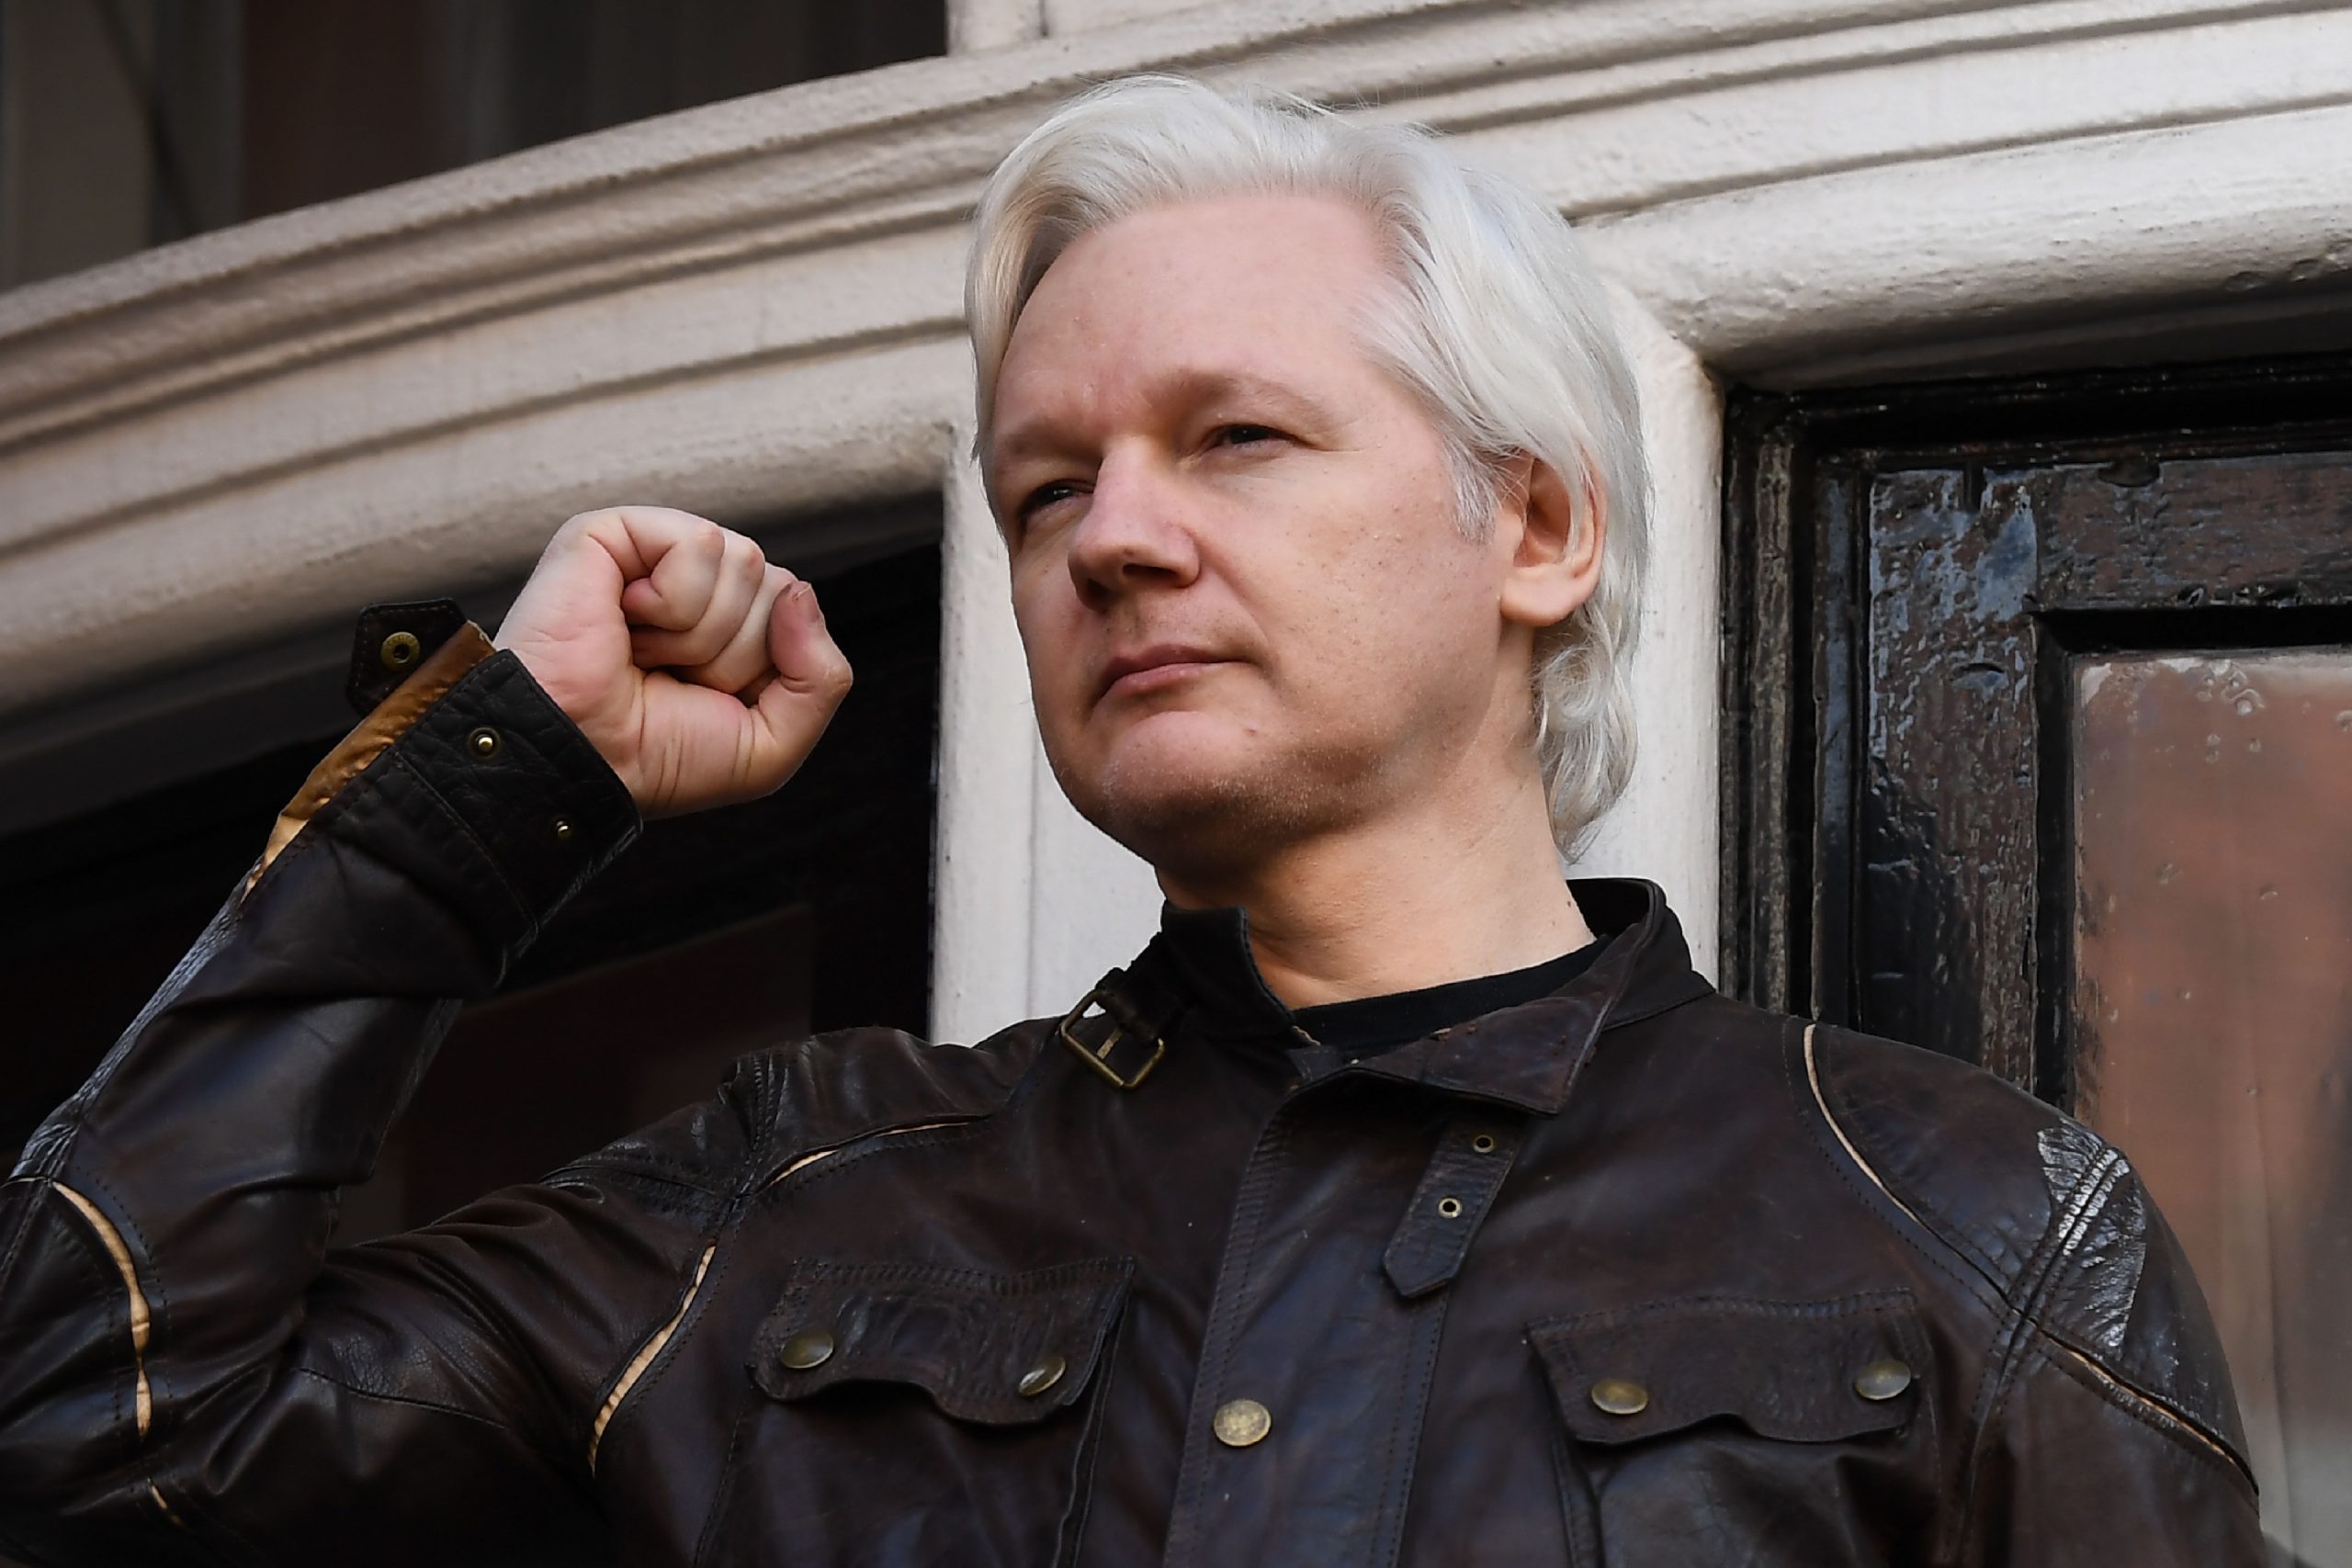 Whats next for Julian Assange?